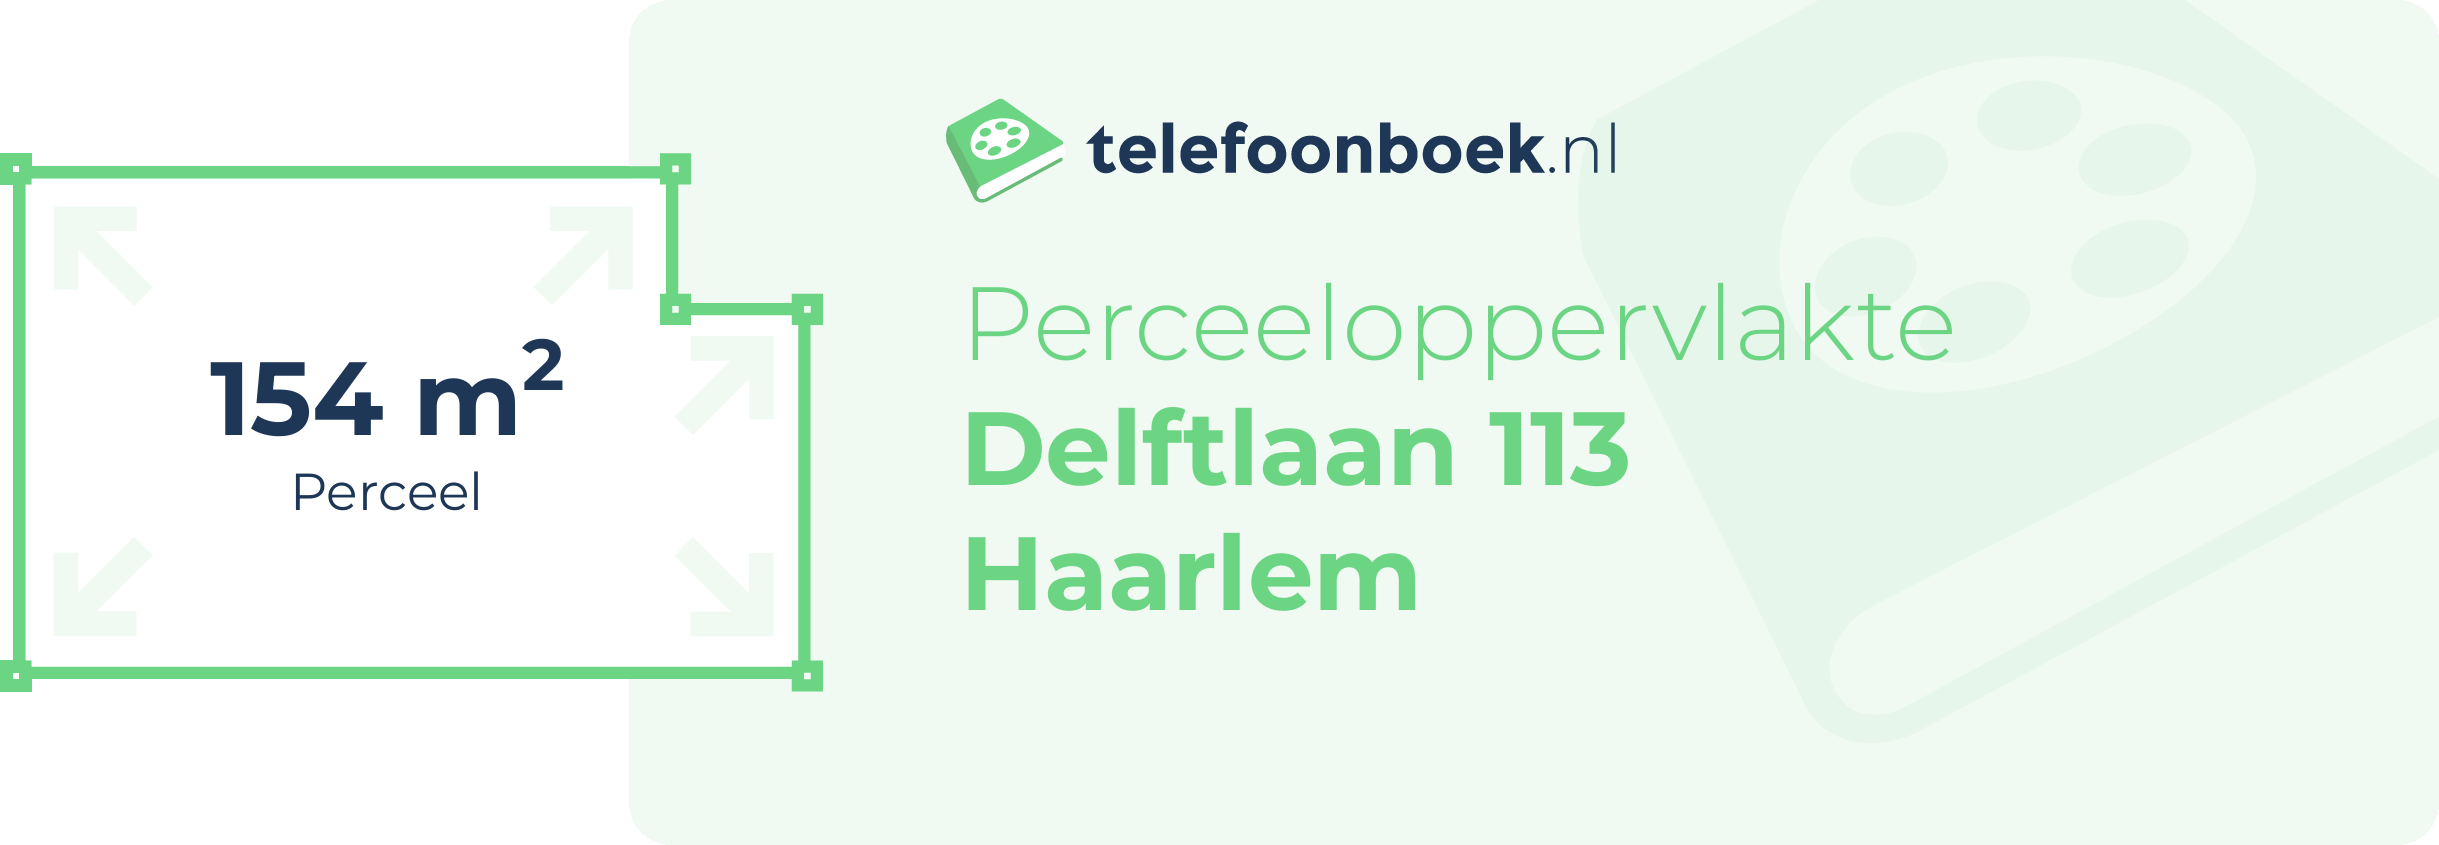 Perceeloppervlakte Delftlaan 113 Haarlem